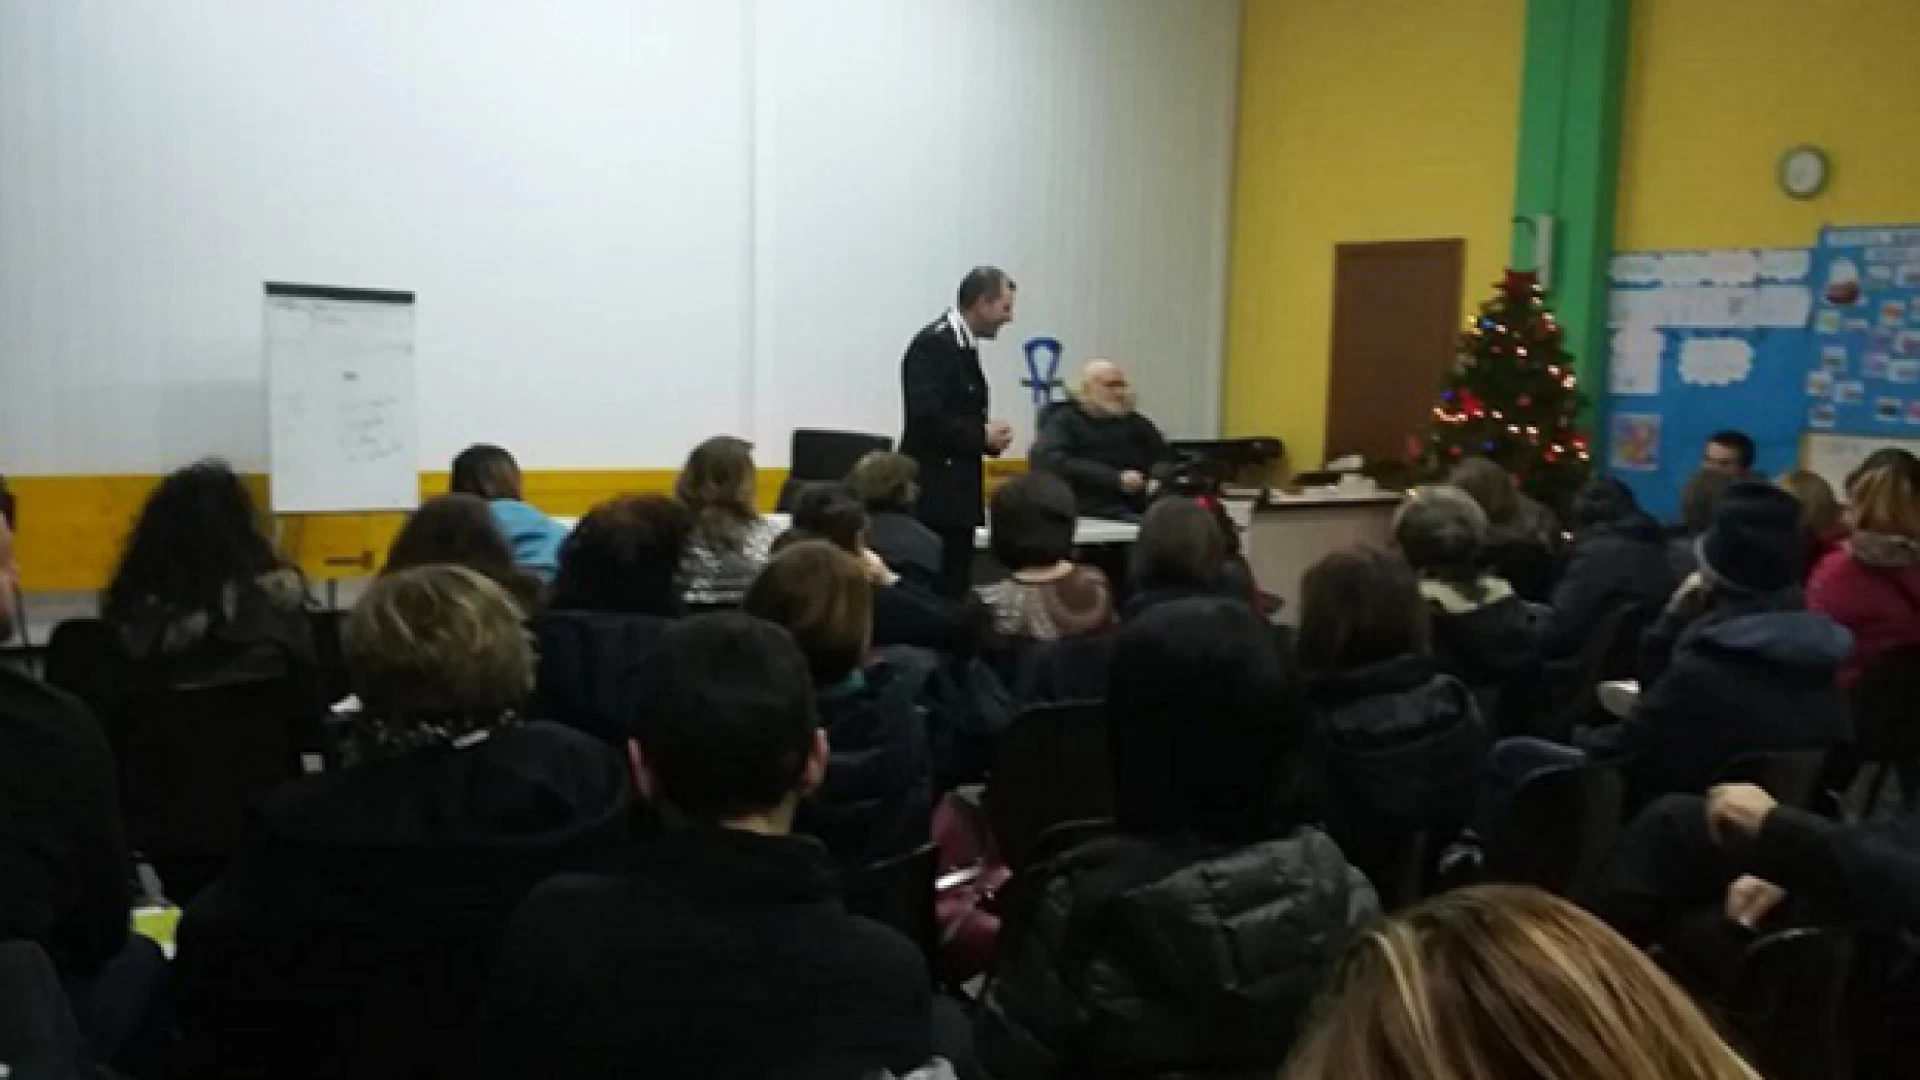 Venafro: truffe agli anziani proseguono le conferenze dei Carabinieri. L’ultima nella serata di ieri presso l’oratorio “Don Orione”.